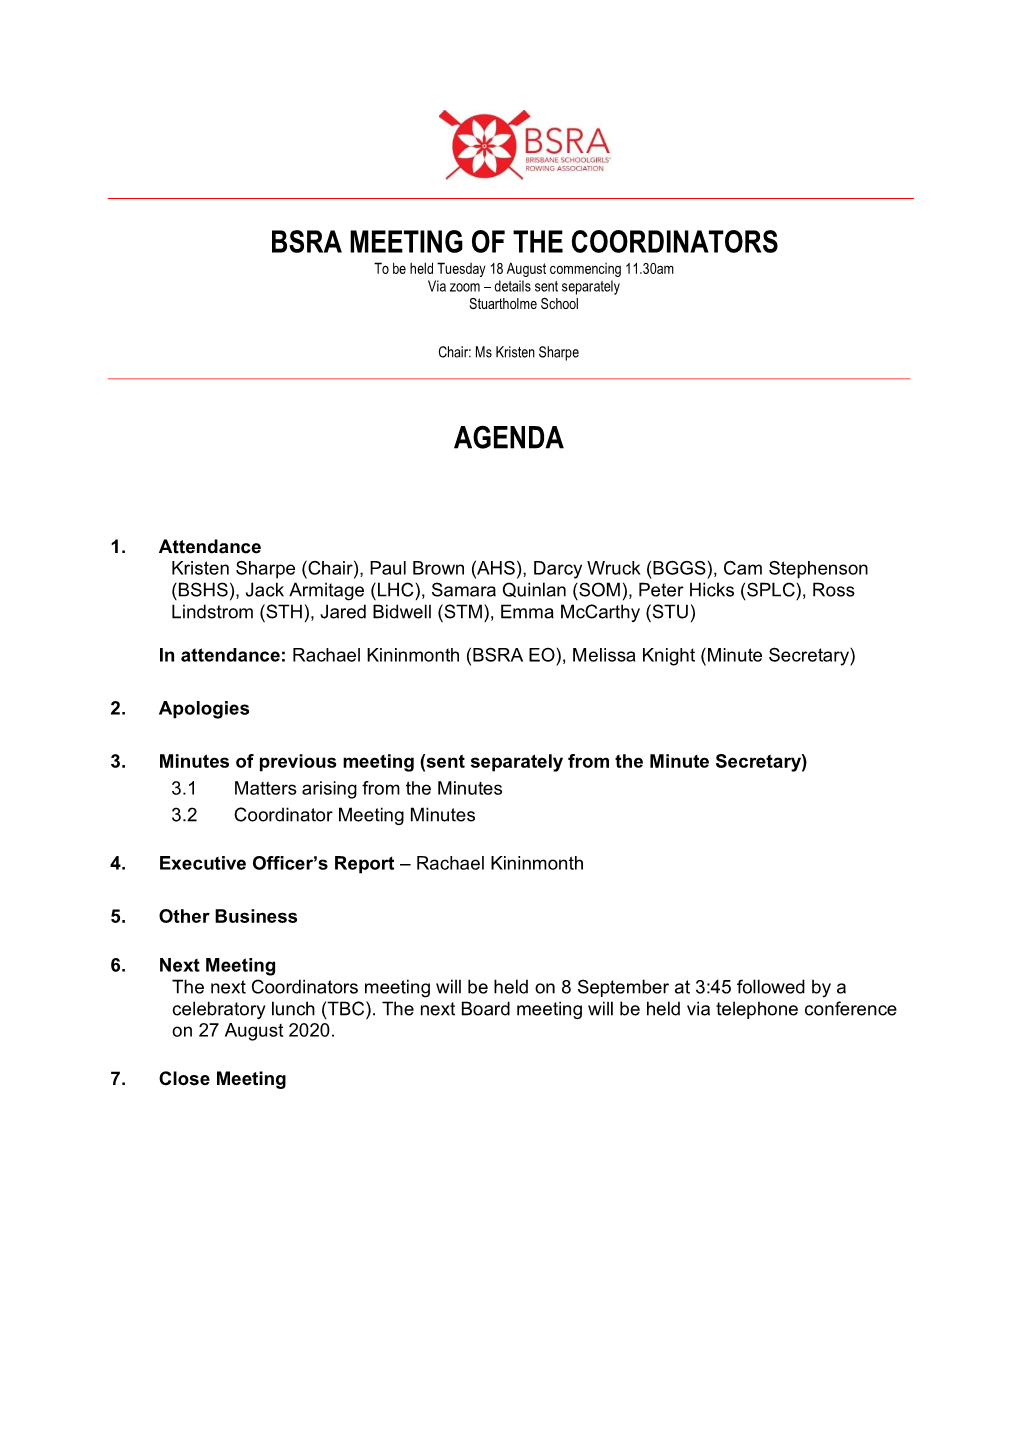 Bsra Meeting of the Coordinators Agenda